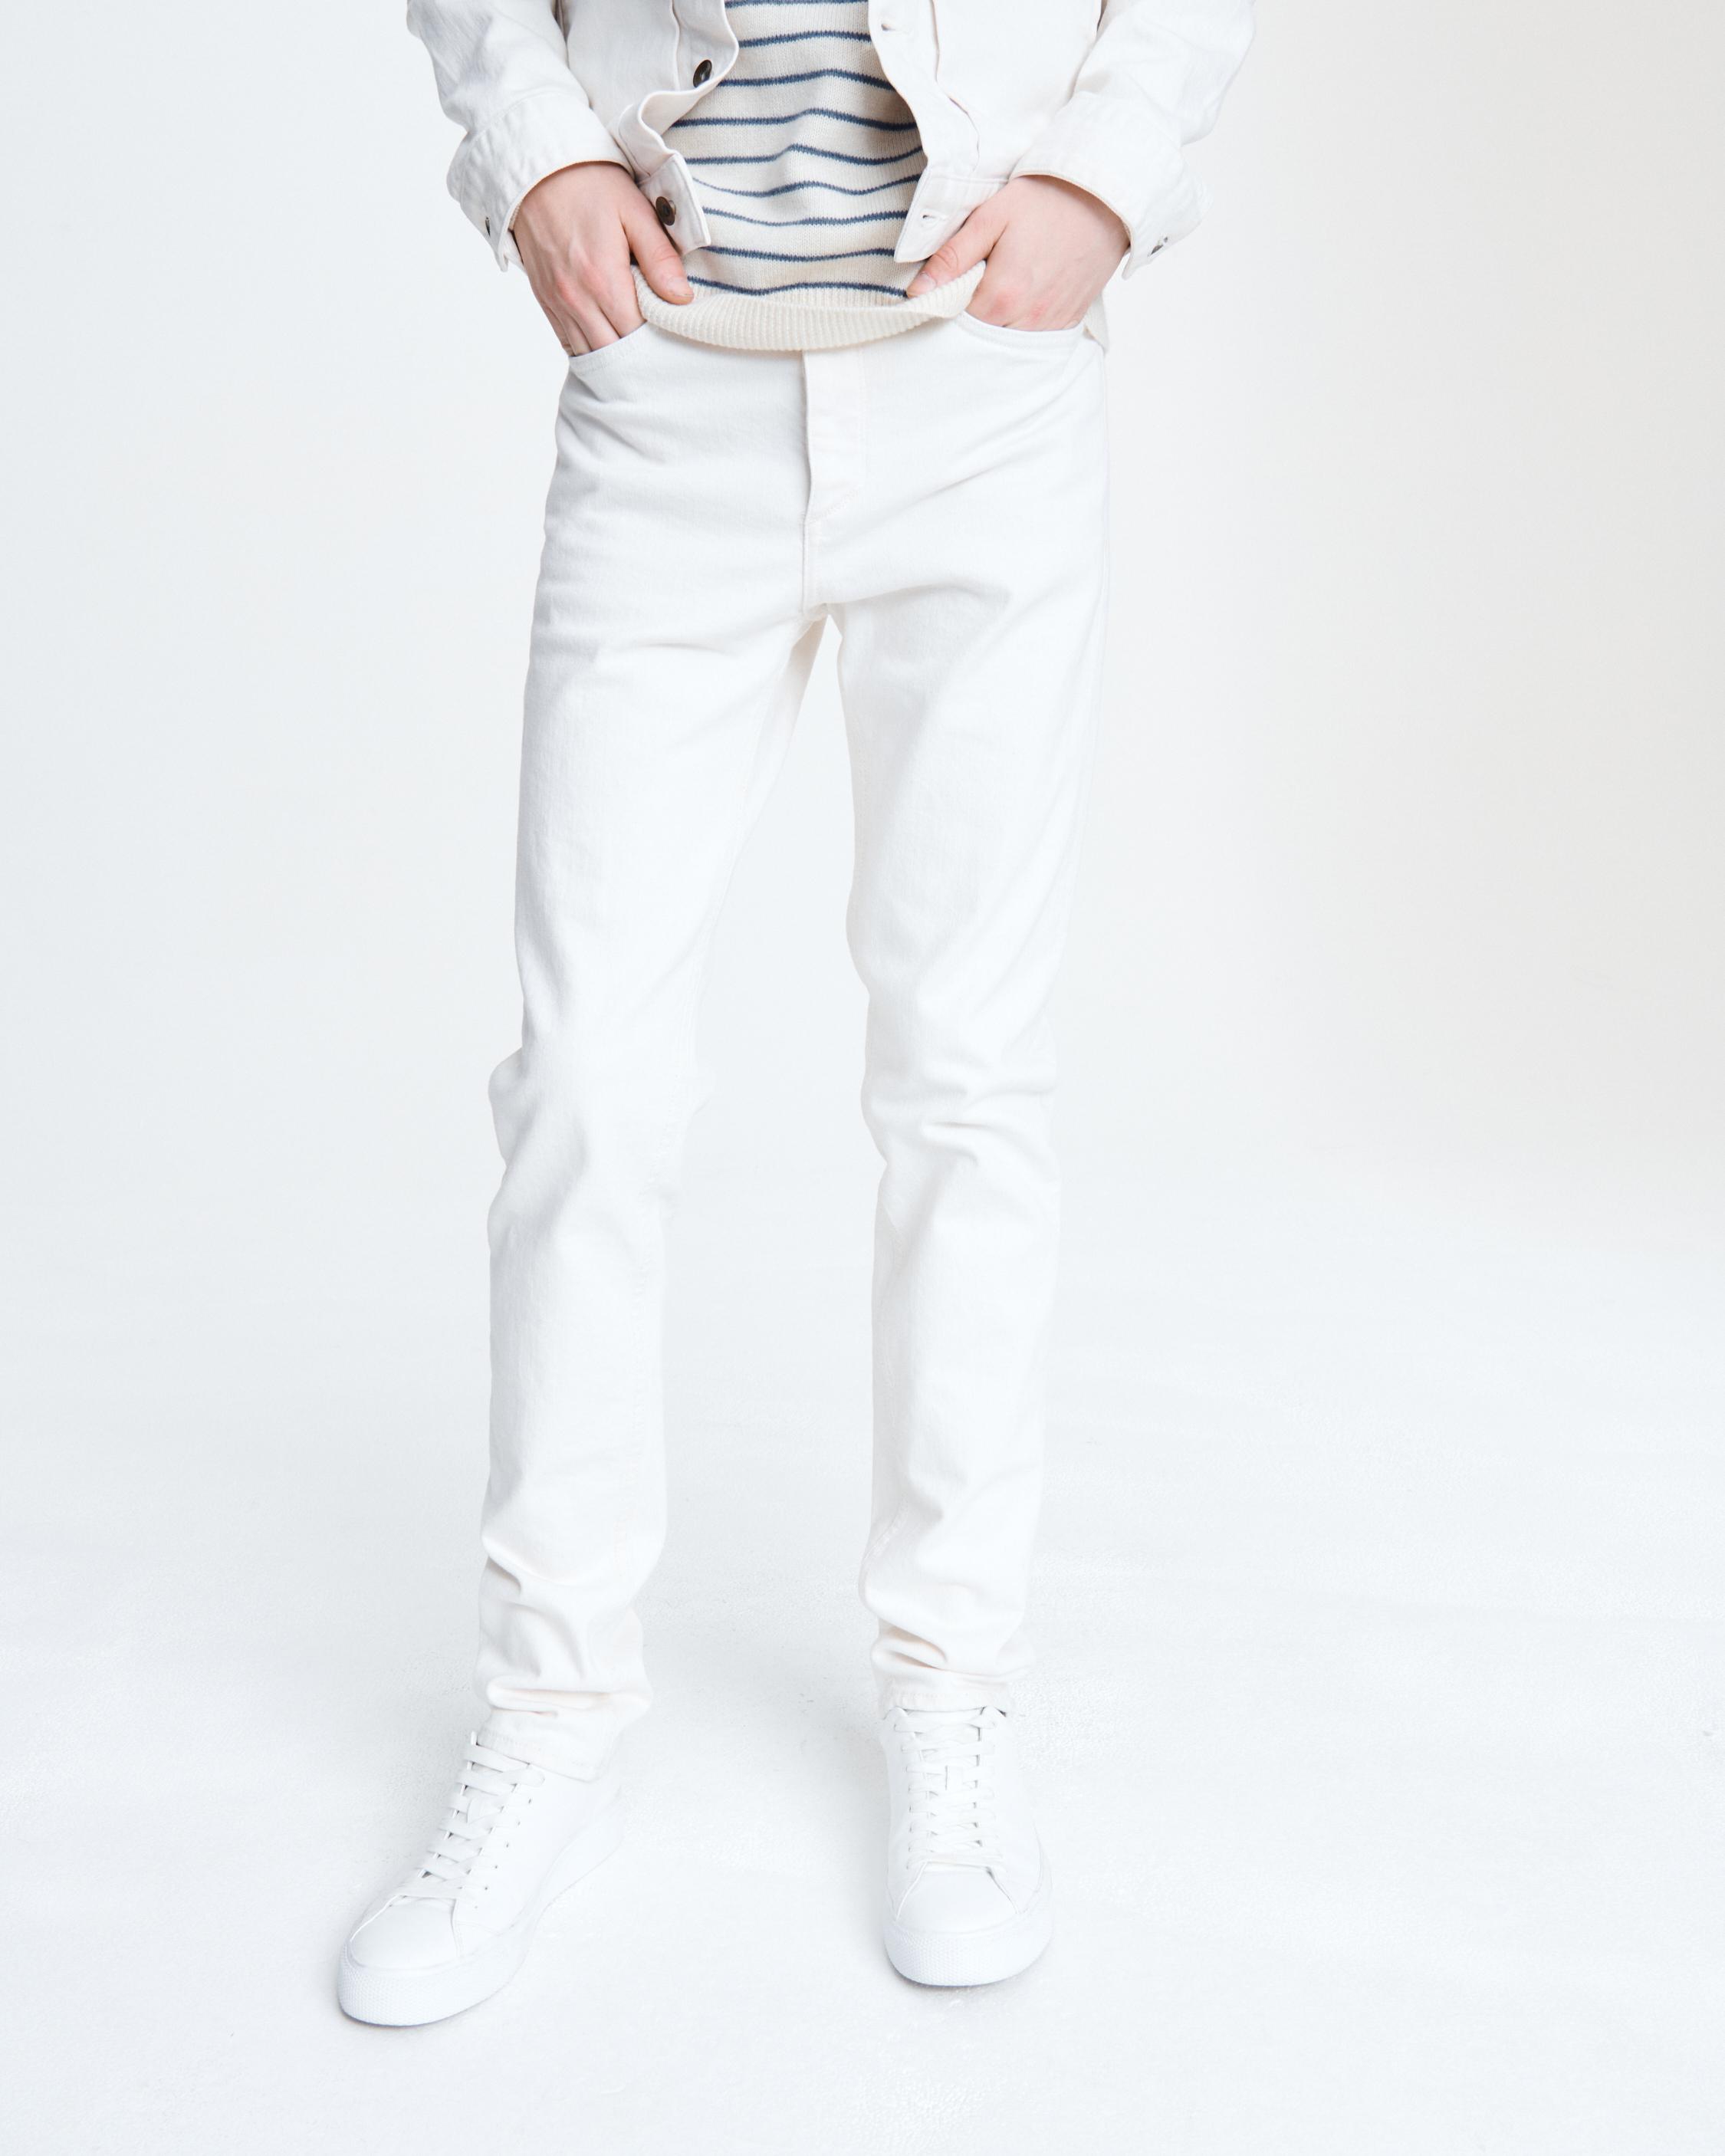 8 Best White Jeans For Men 2022